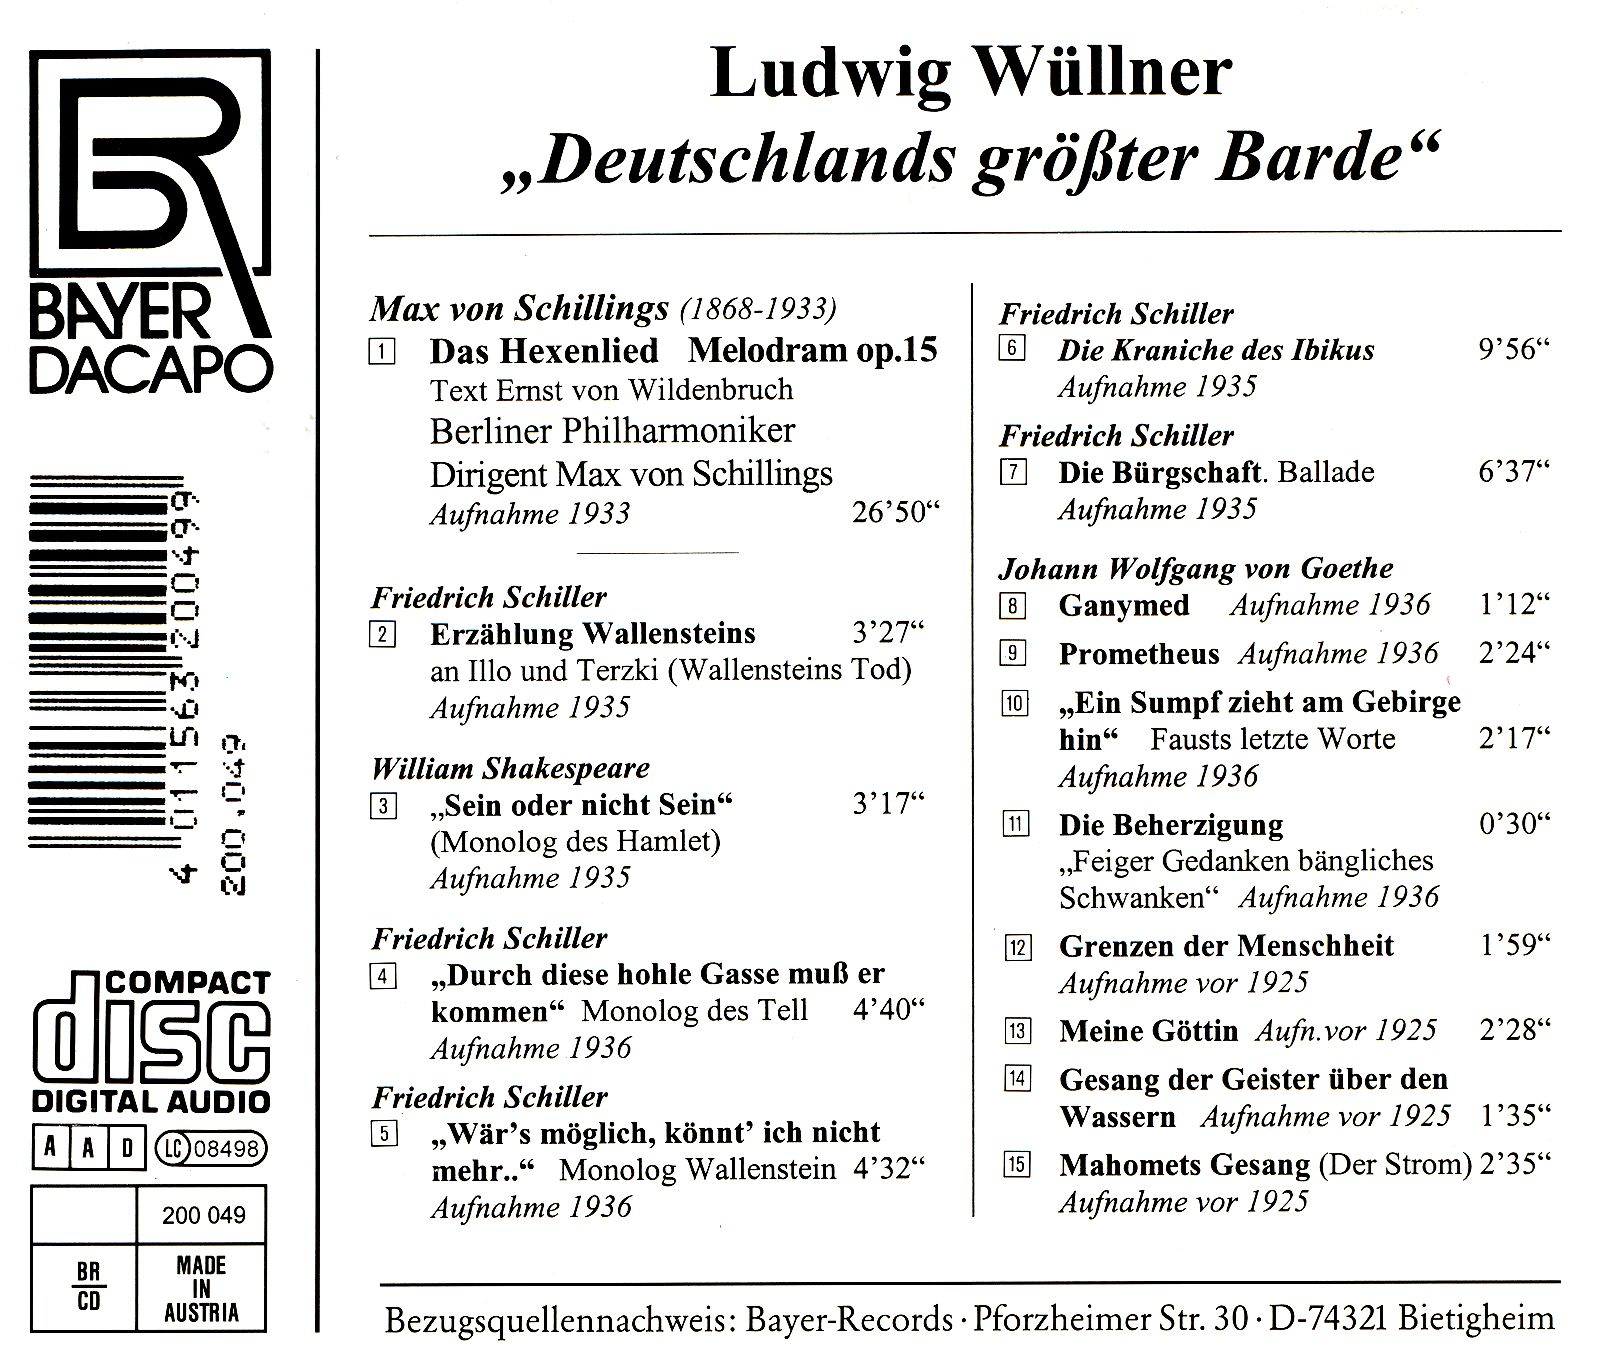 Ludwig Wüllner